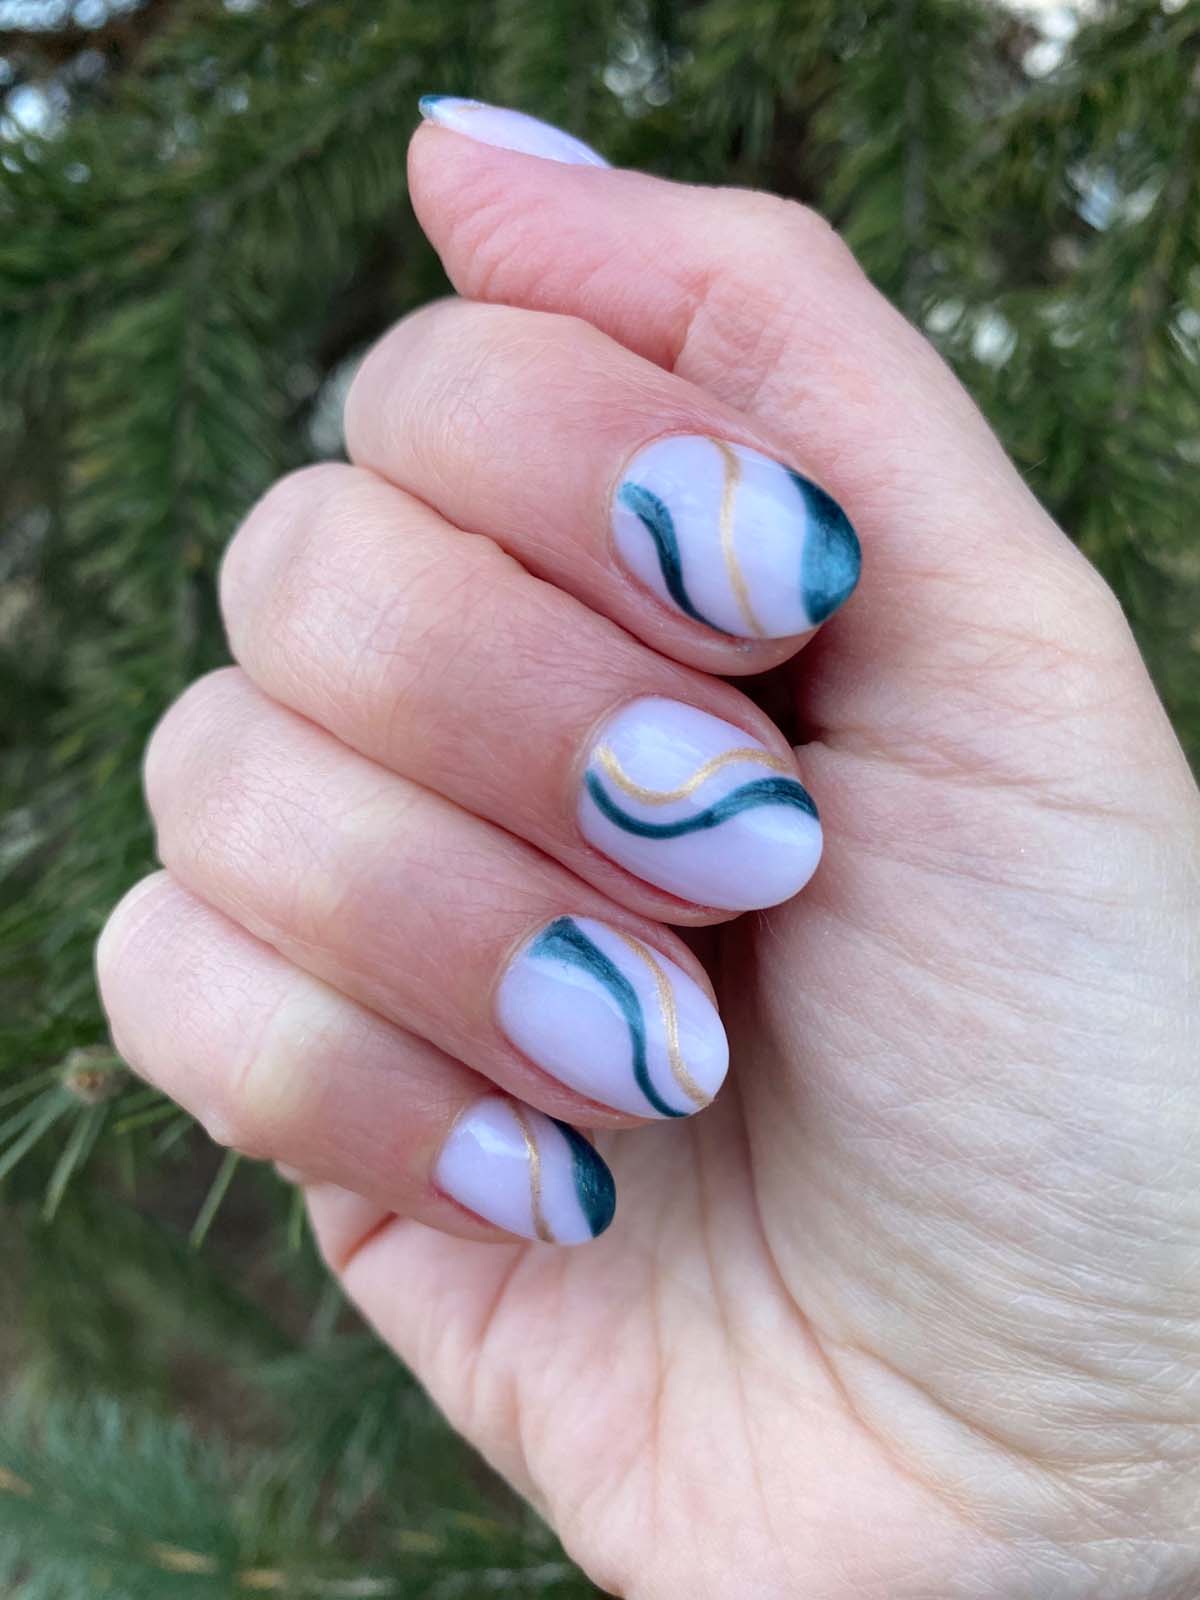 Winter green nails